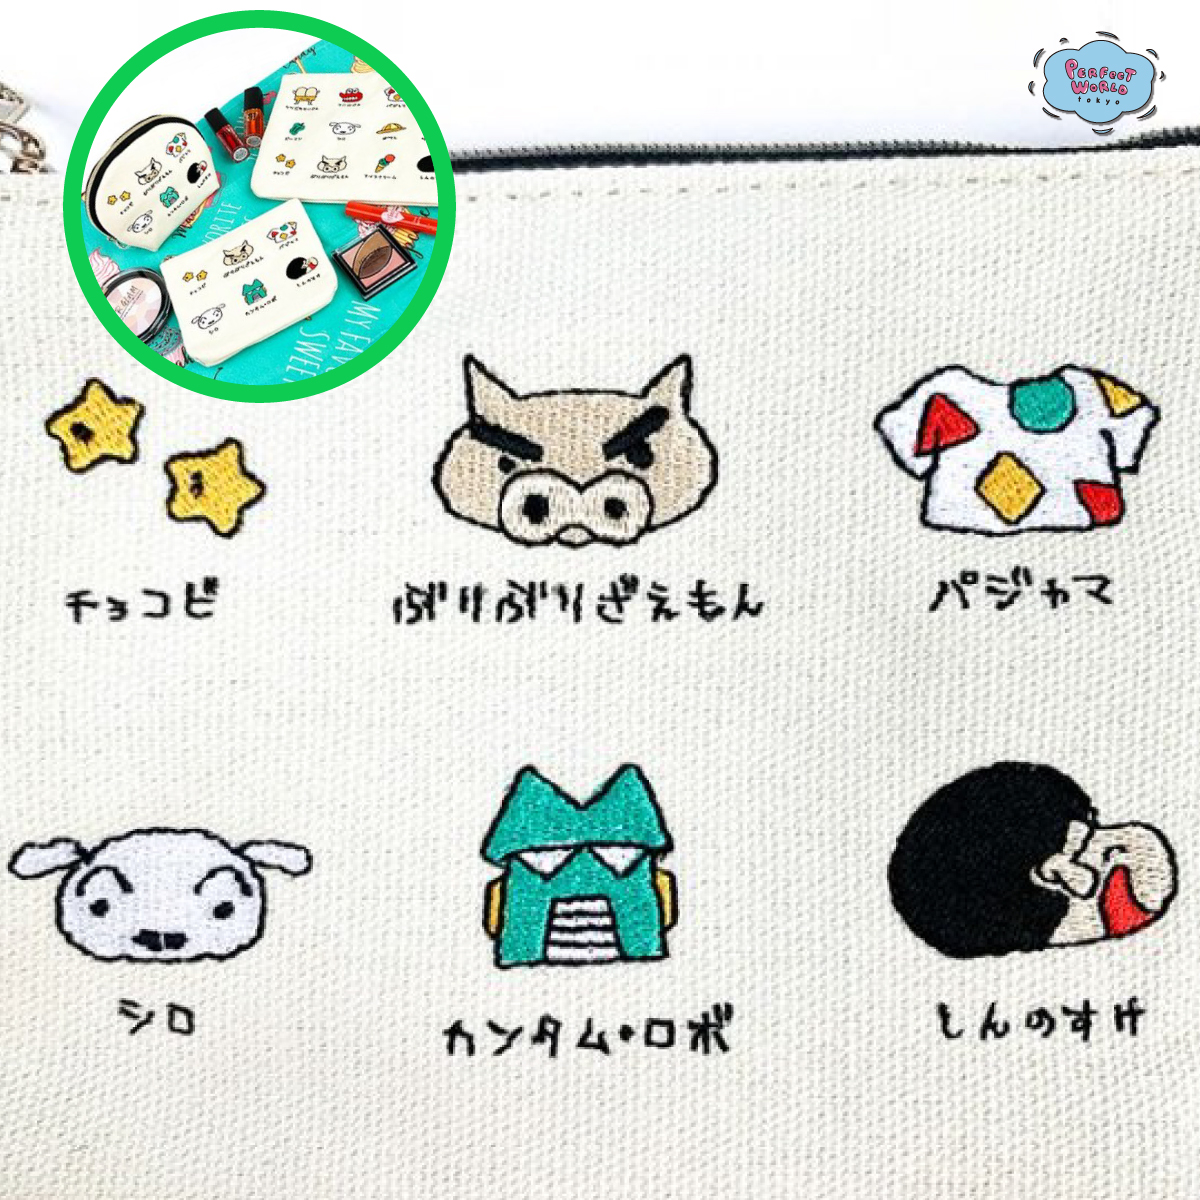 大人用しんちゃんアイテム オトナかわいいちび刺繍シリーズのポーチたち Perfect World Tokyo